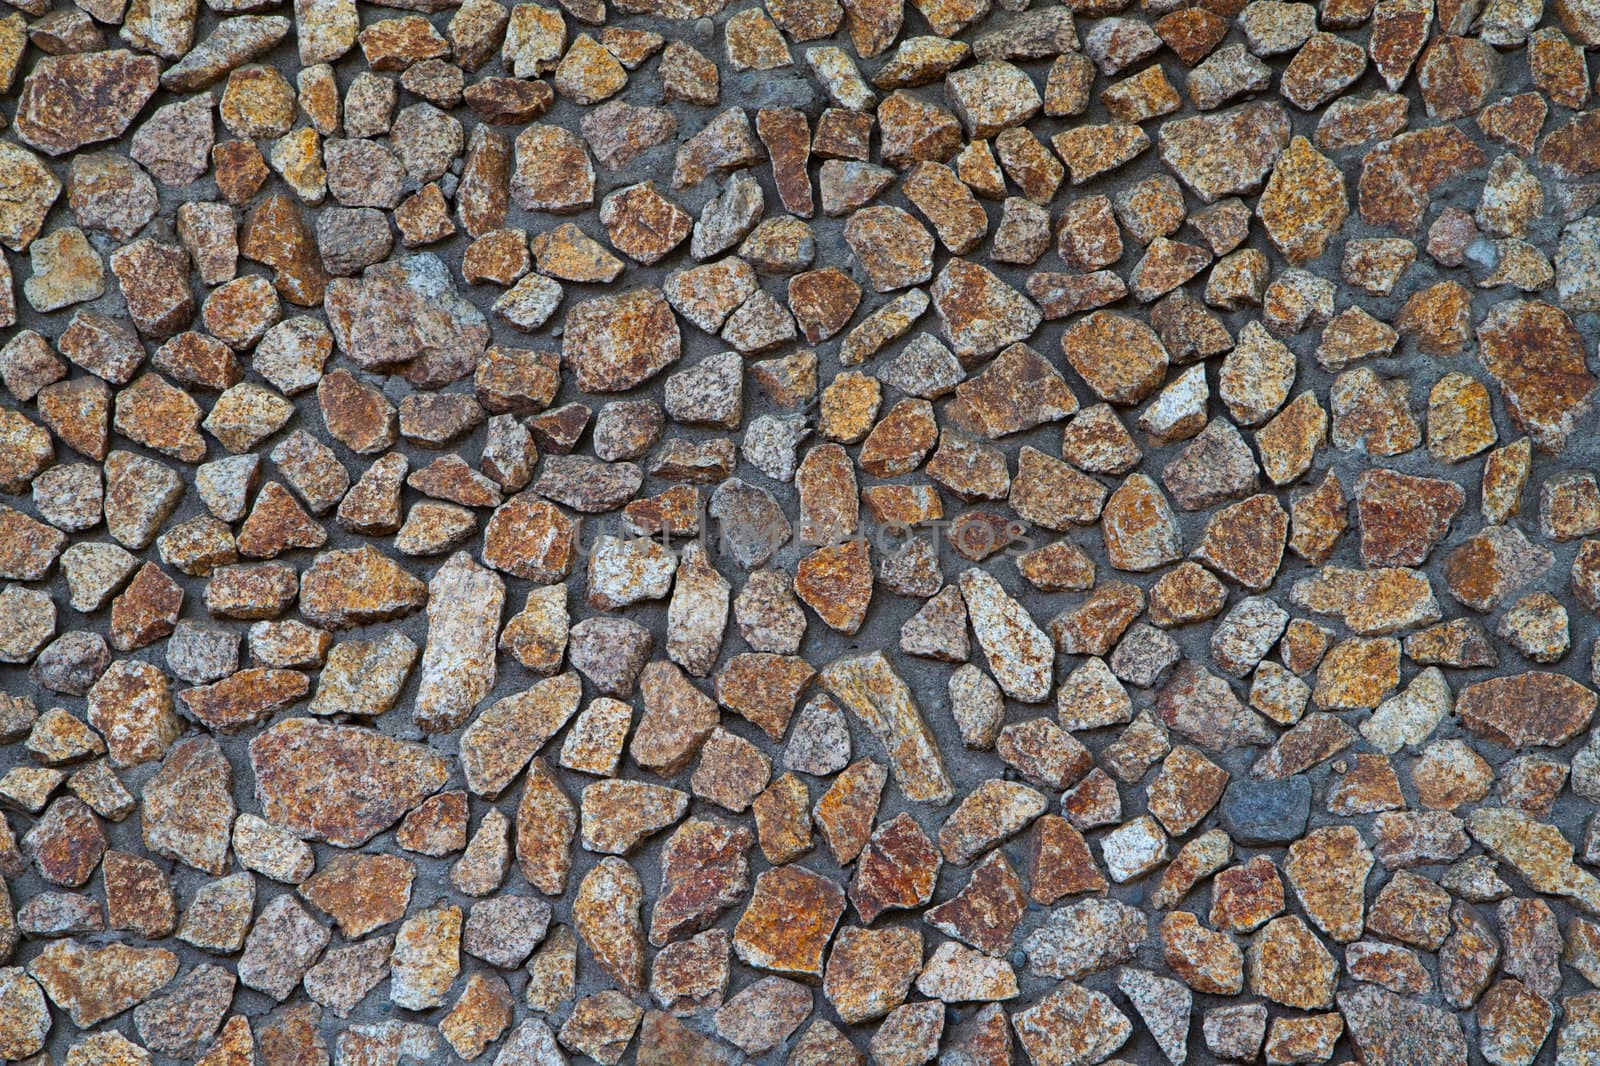 Brown, tan, and gray Rock and mortar wall